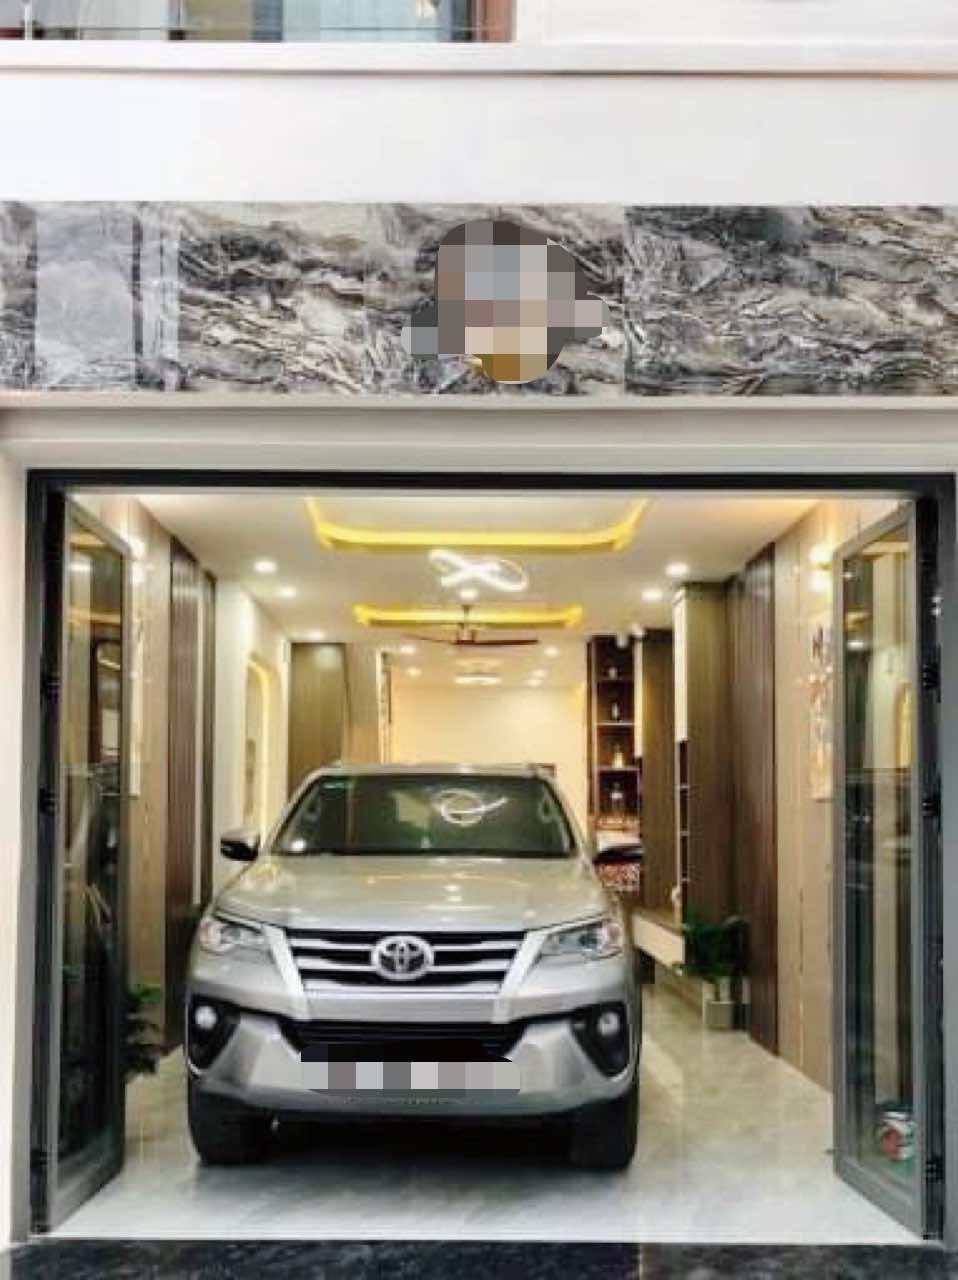 Nhà mới xe hơi ngủ nhà 51m2-4tang Quang Trung Gò Vấp - thiết kế hiện đại - 7 tỷ nhỉnh 0932030061 - Ảnh 1